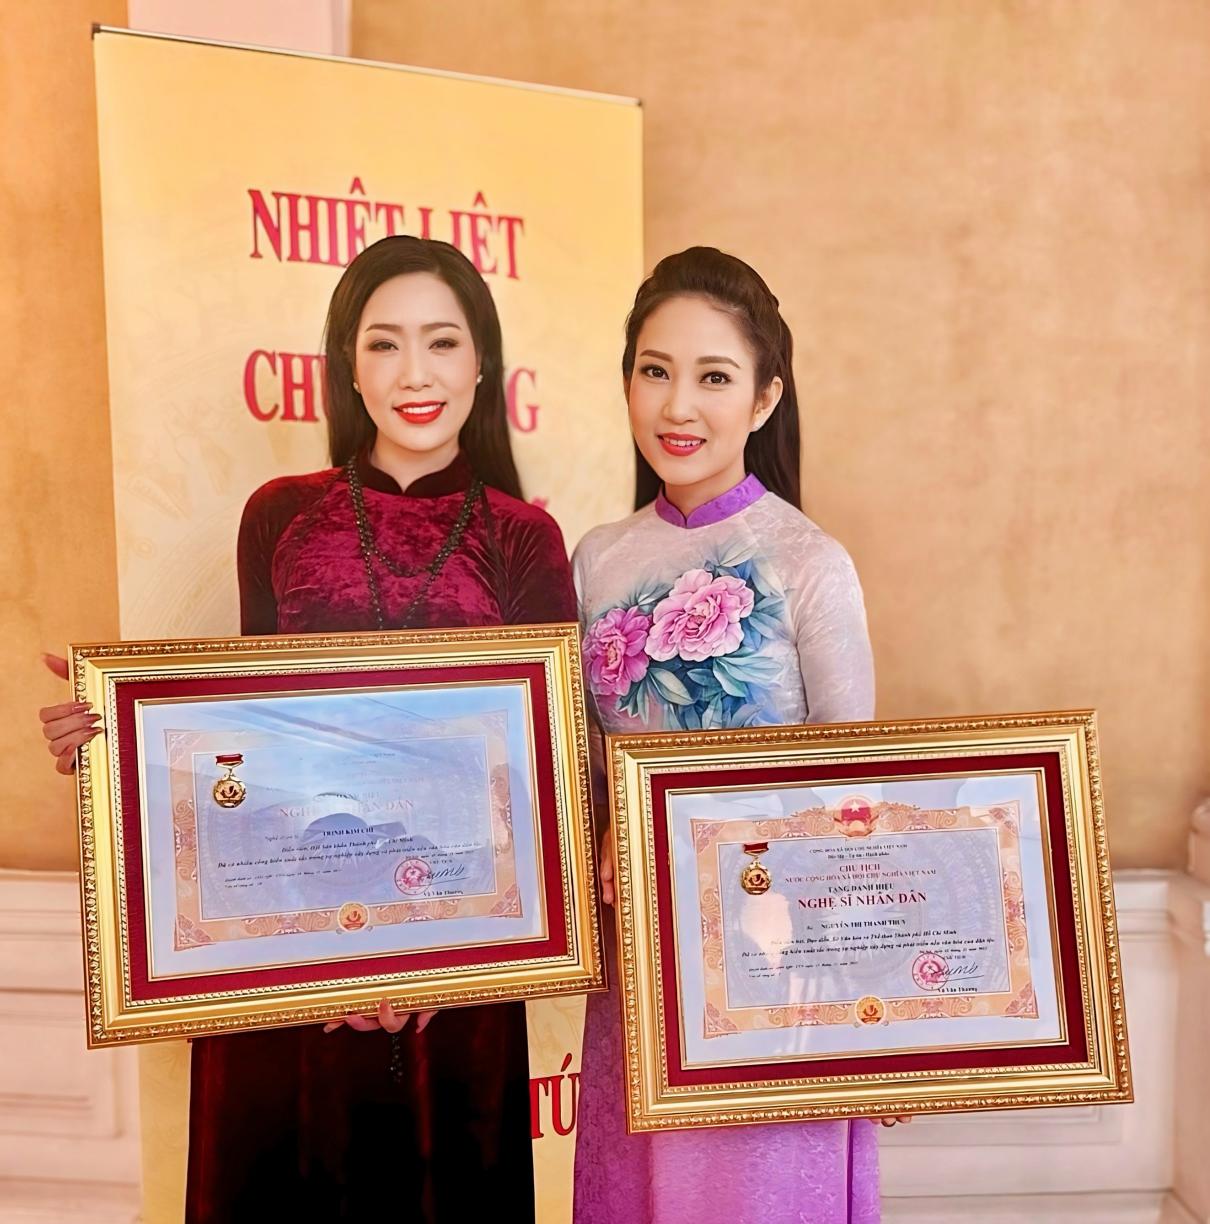 Trịnh Kim Chi nhân danh hiệu NSND 3 Trịnh Kim Chi vinh dự và tự hào nhận danh hiệu Nghệ sĩ Nhân Dân